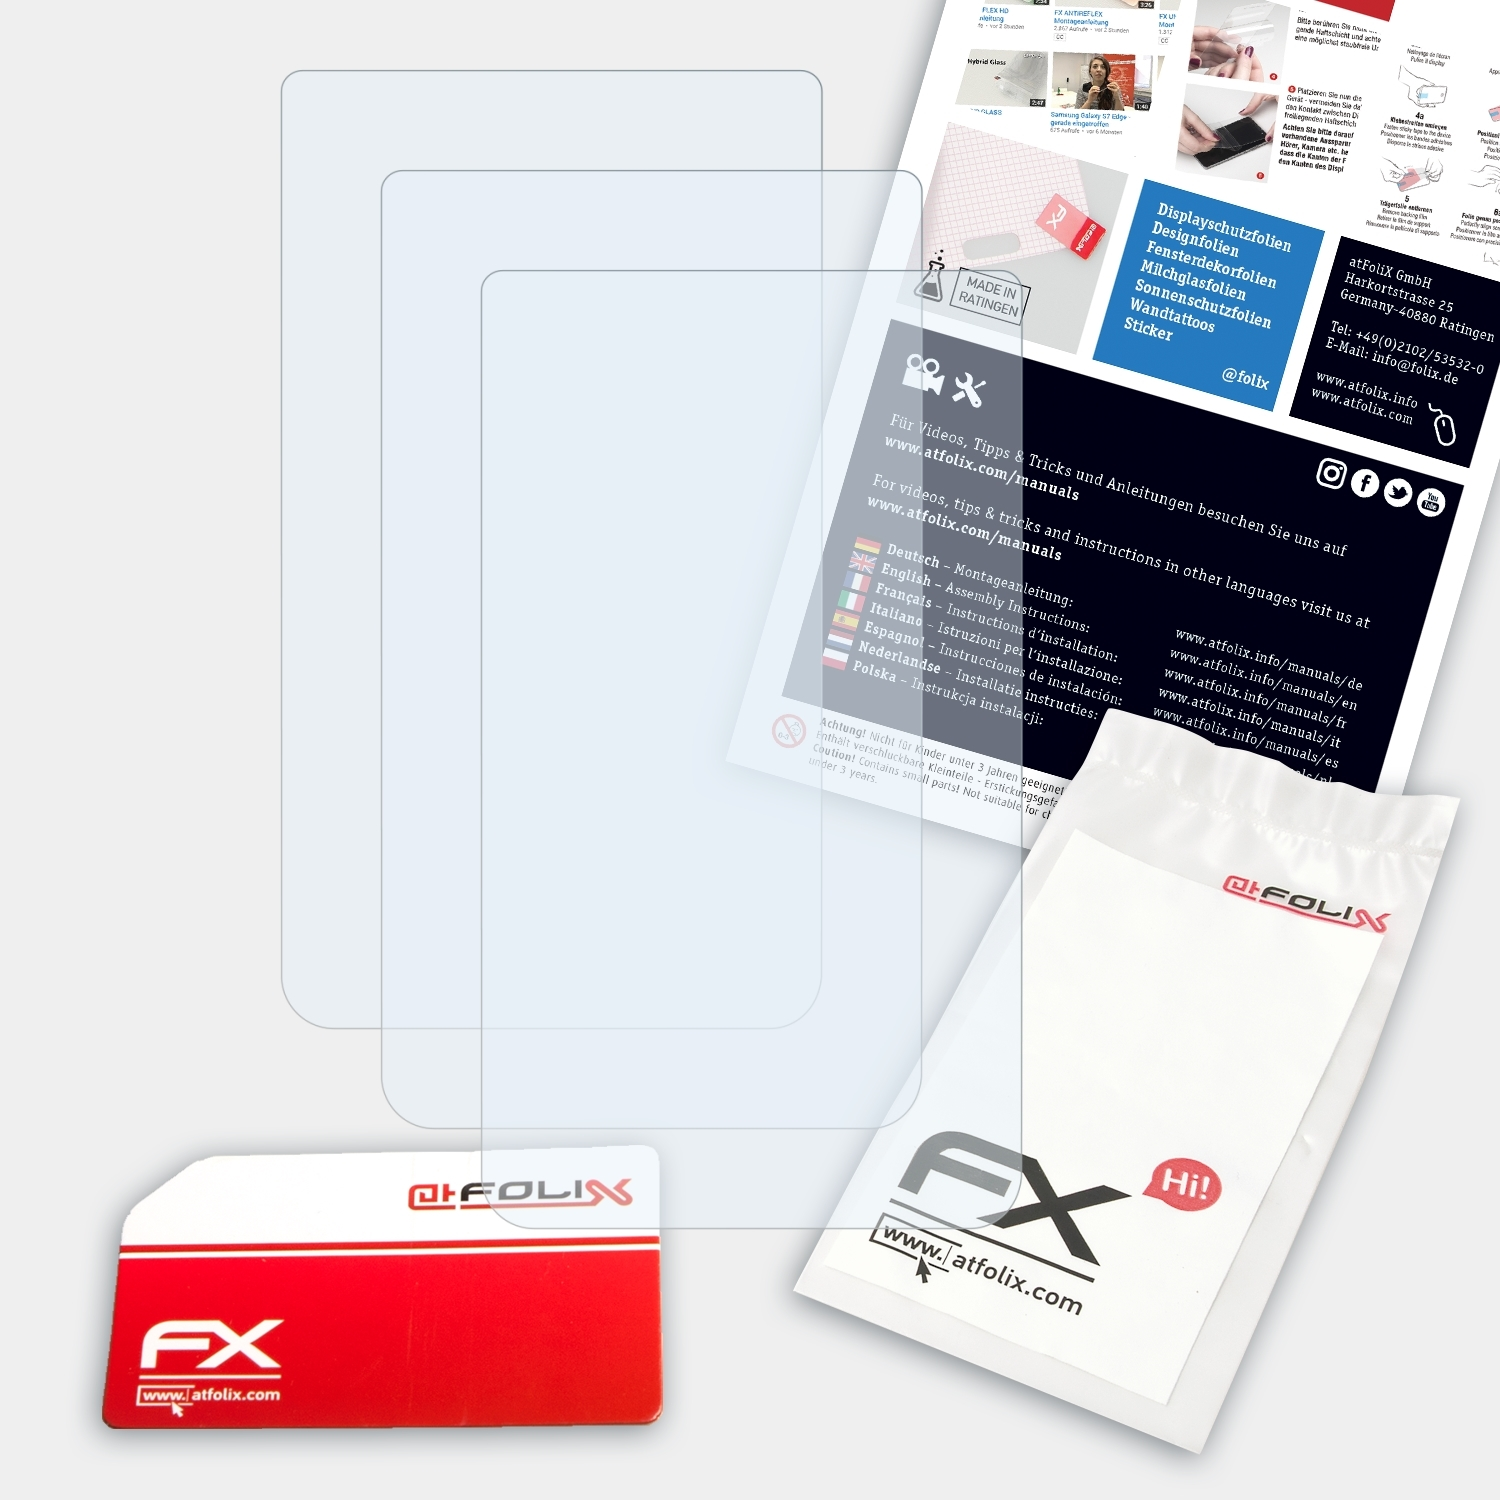 Oregon FX-Clear 3x Garmin ATFOLIX 550t) Displayschutz(für